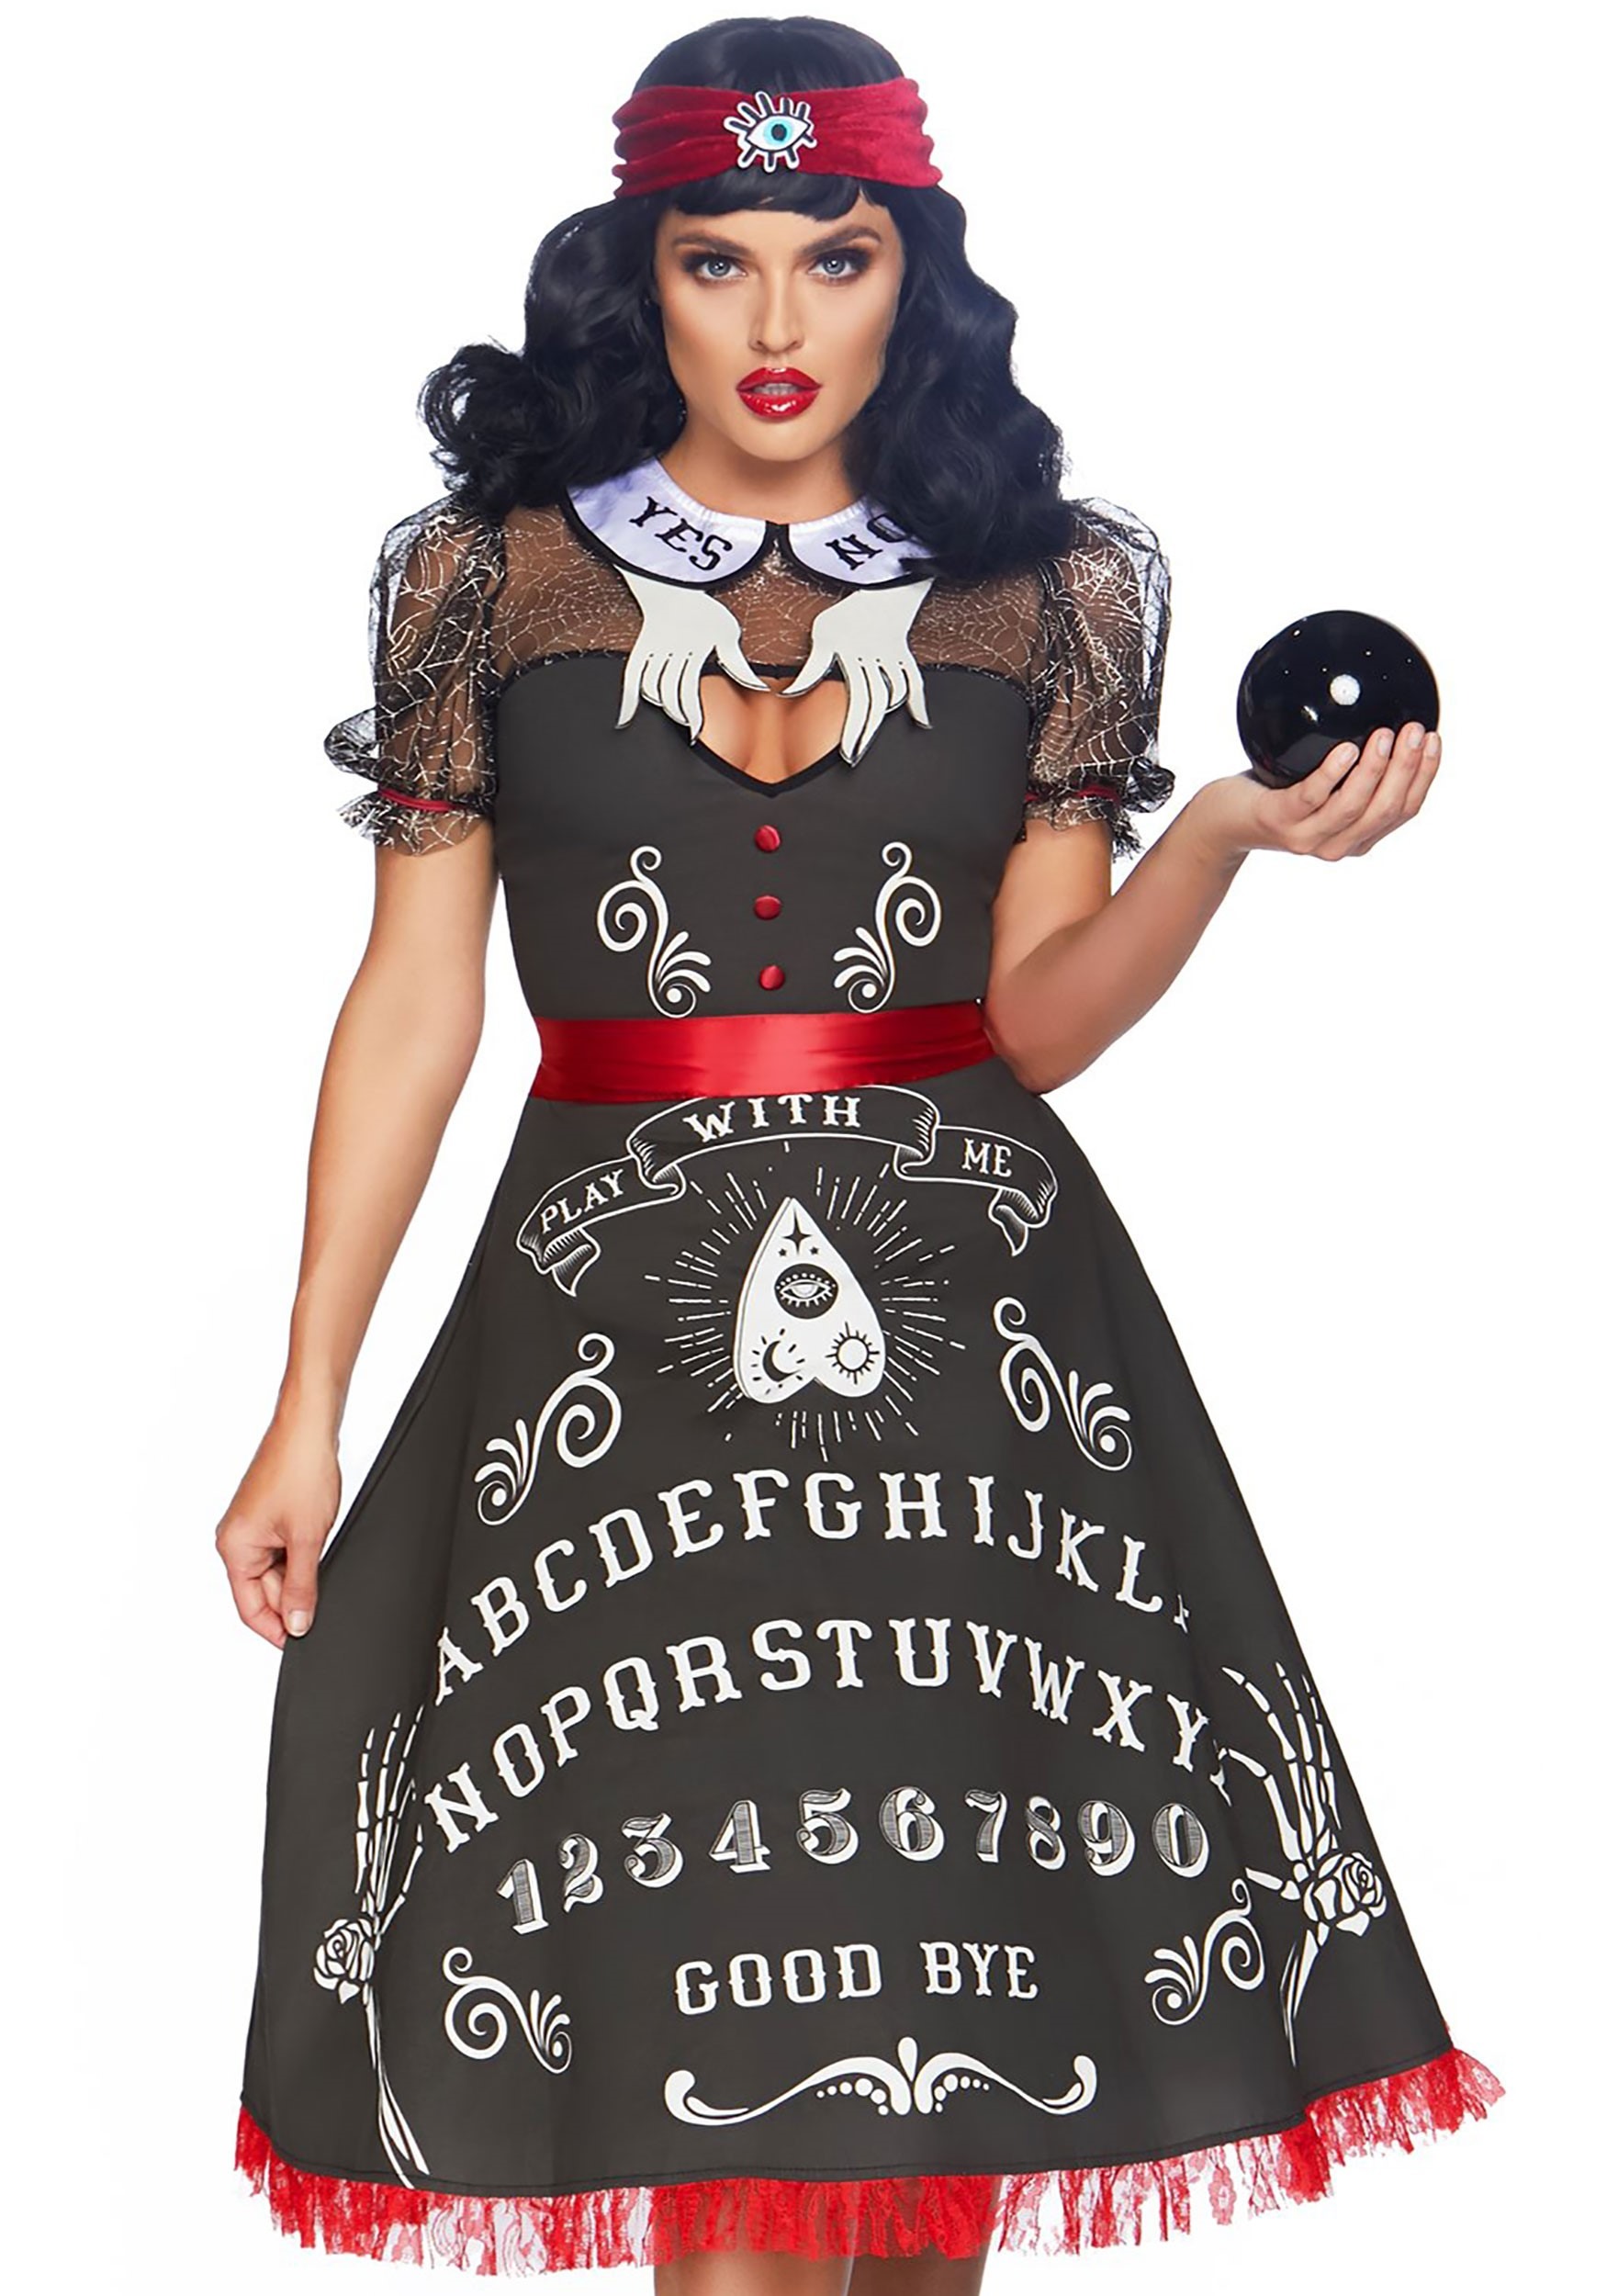 Spooky Board Beauty Costume for Women